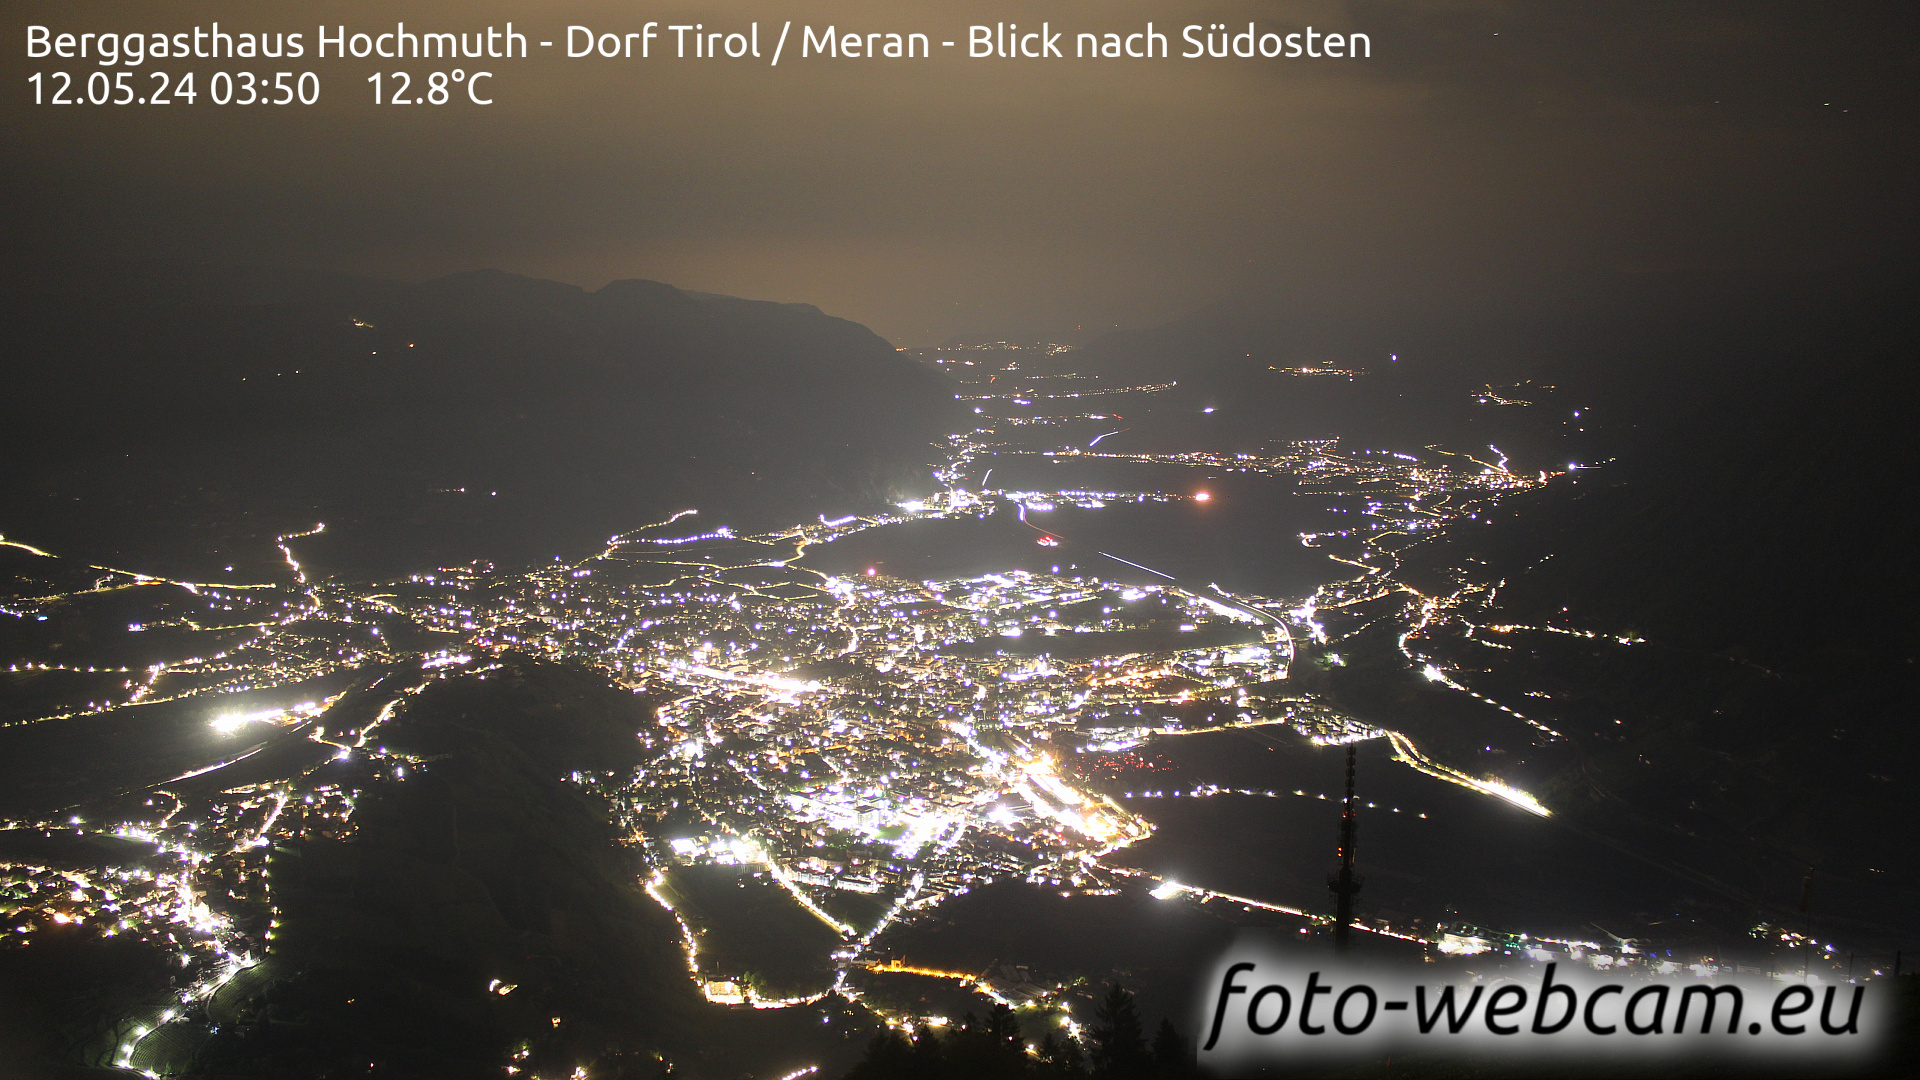 Tirol Wed. 03:56